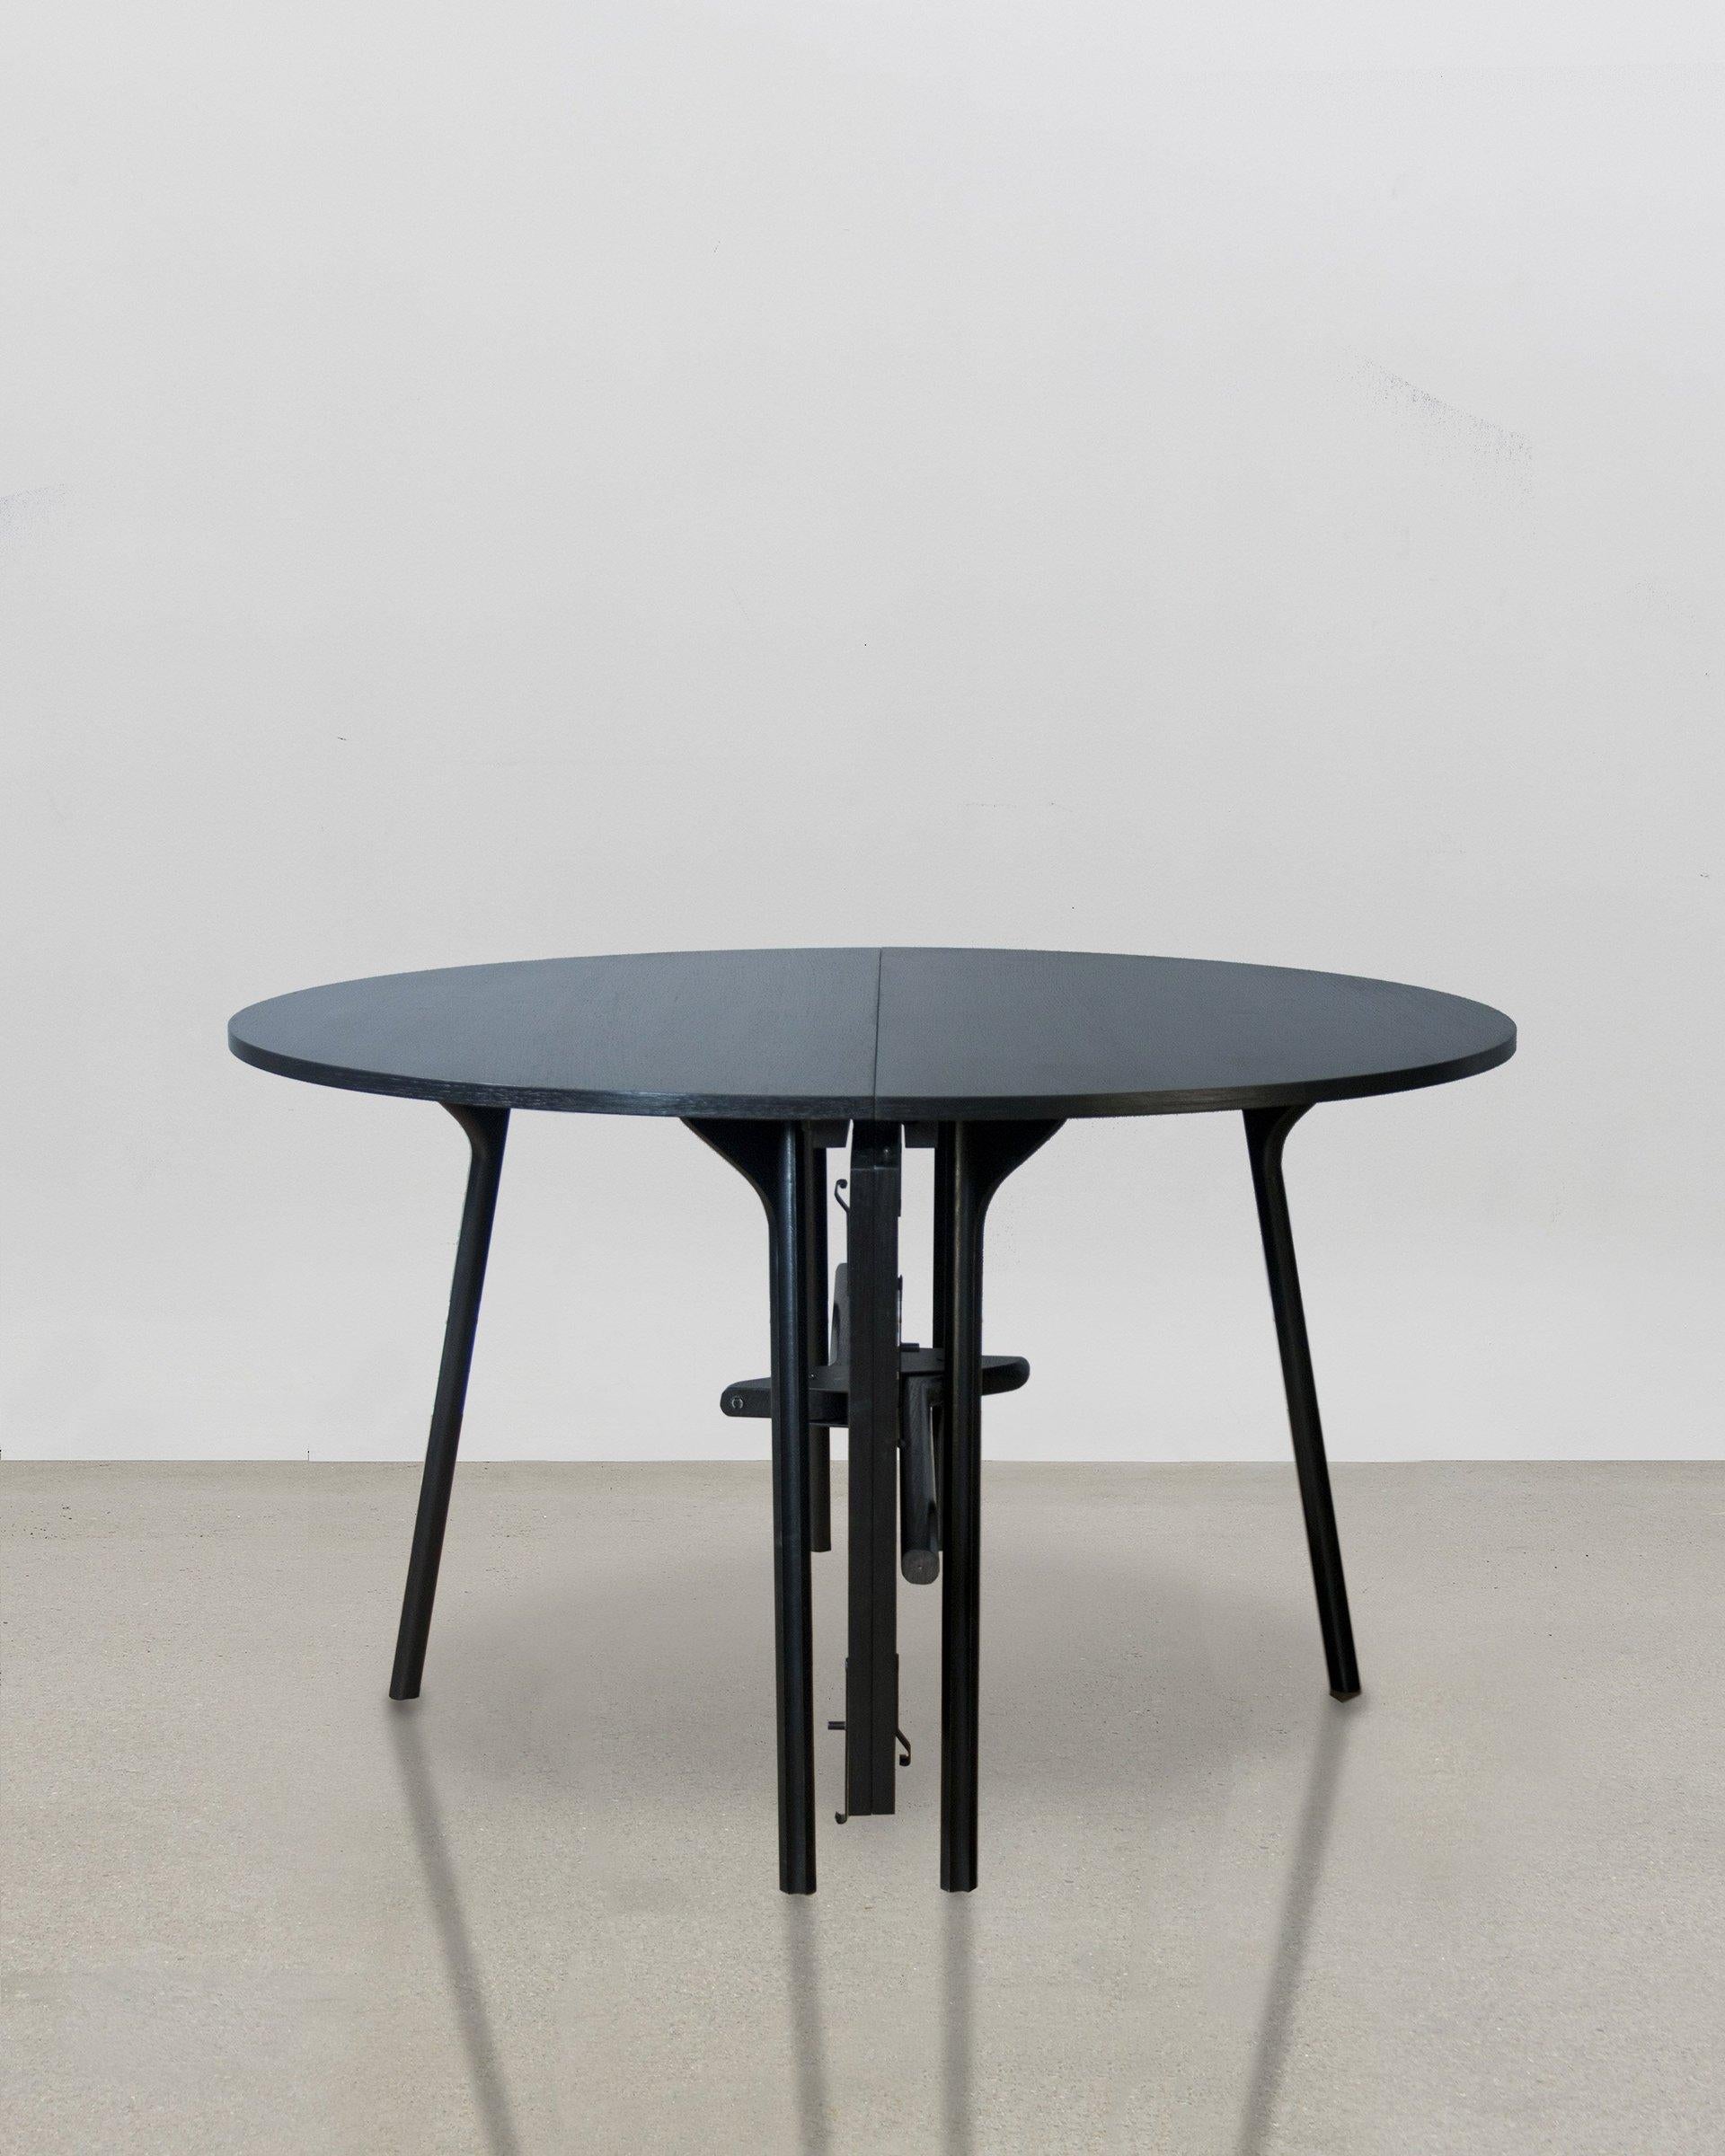 Les pieds de forme complexe de la table PH Circle - inspirés par le mouvement agile du scarabée, ainsi que les avantages d'une conception et d'une ingénierie de précision - permettent à Poul Henningsen de concevoir une table dont les pieds sont les